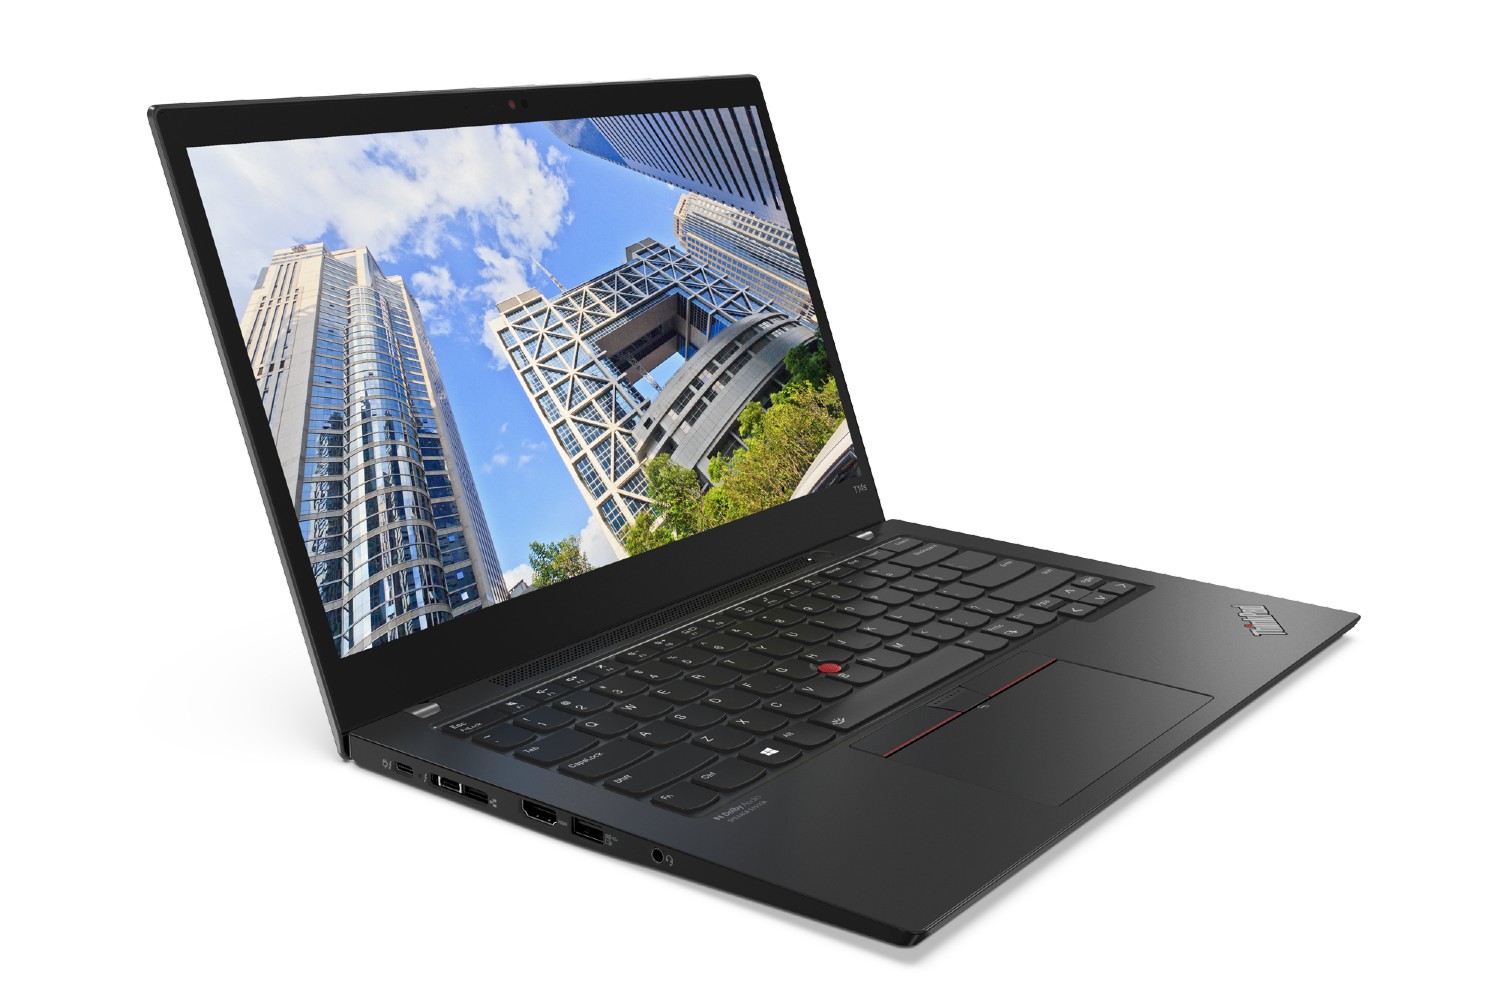 O laptop Lenovo ThinkPad T14s Gen 2 com uma paisagem urbana na tela.